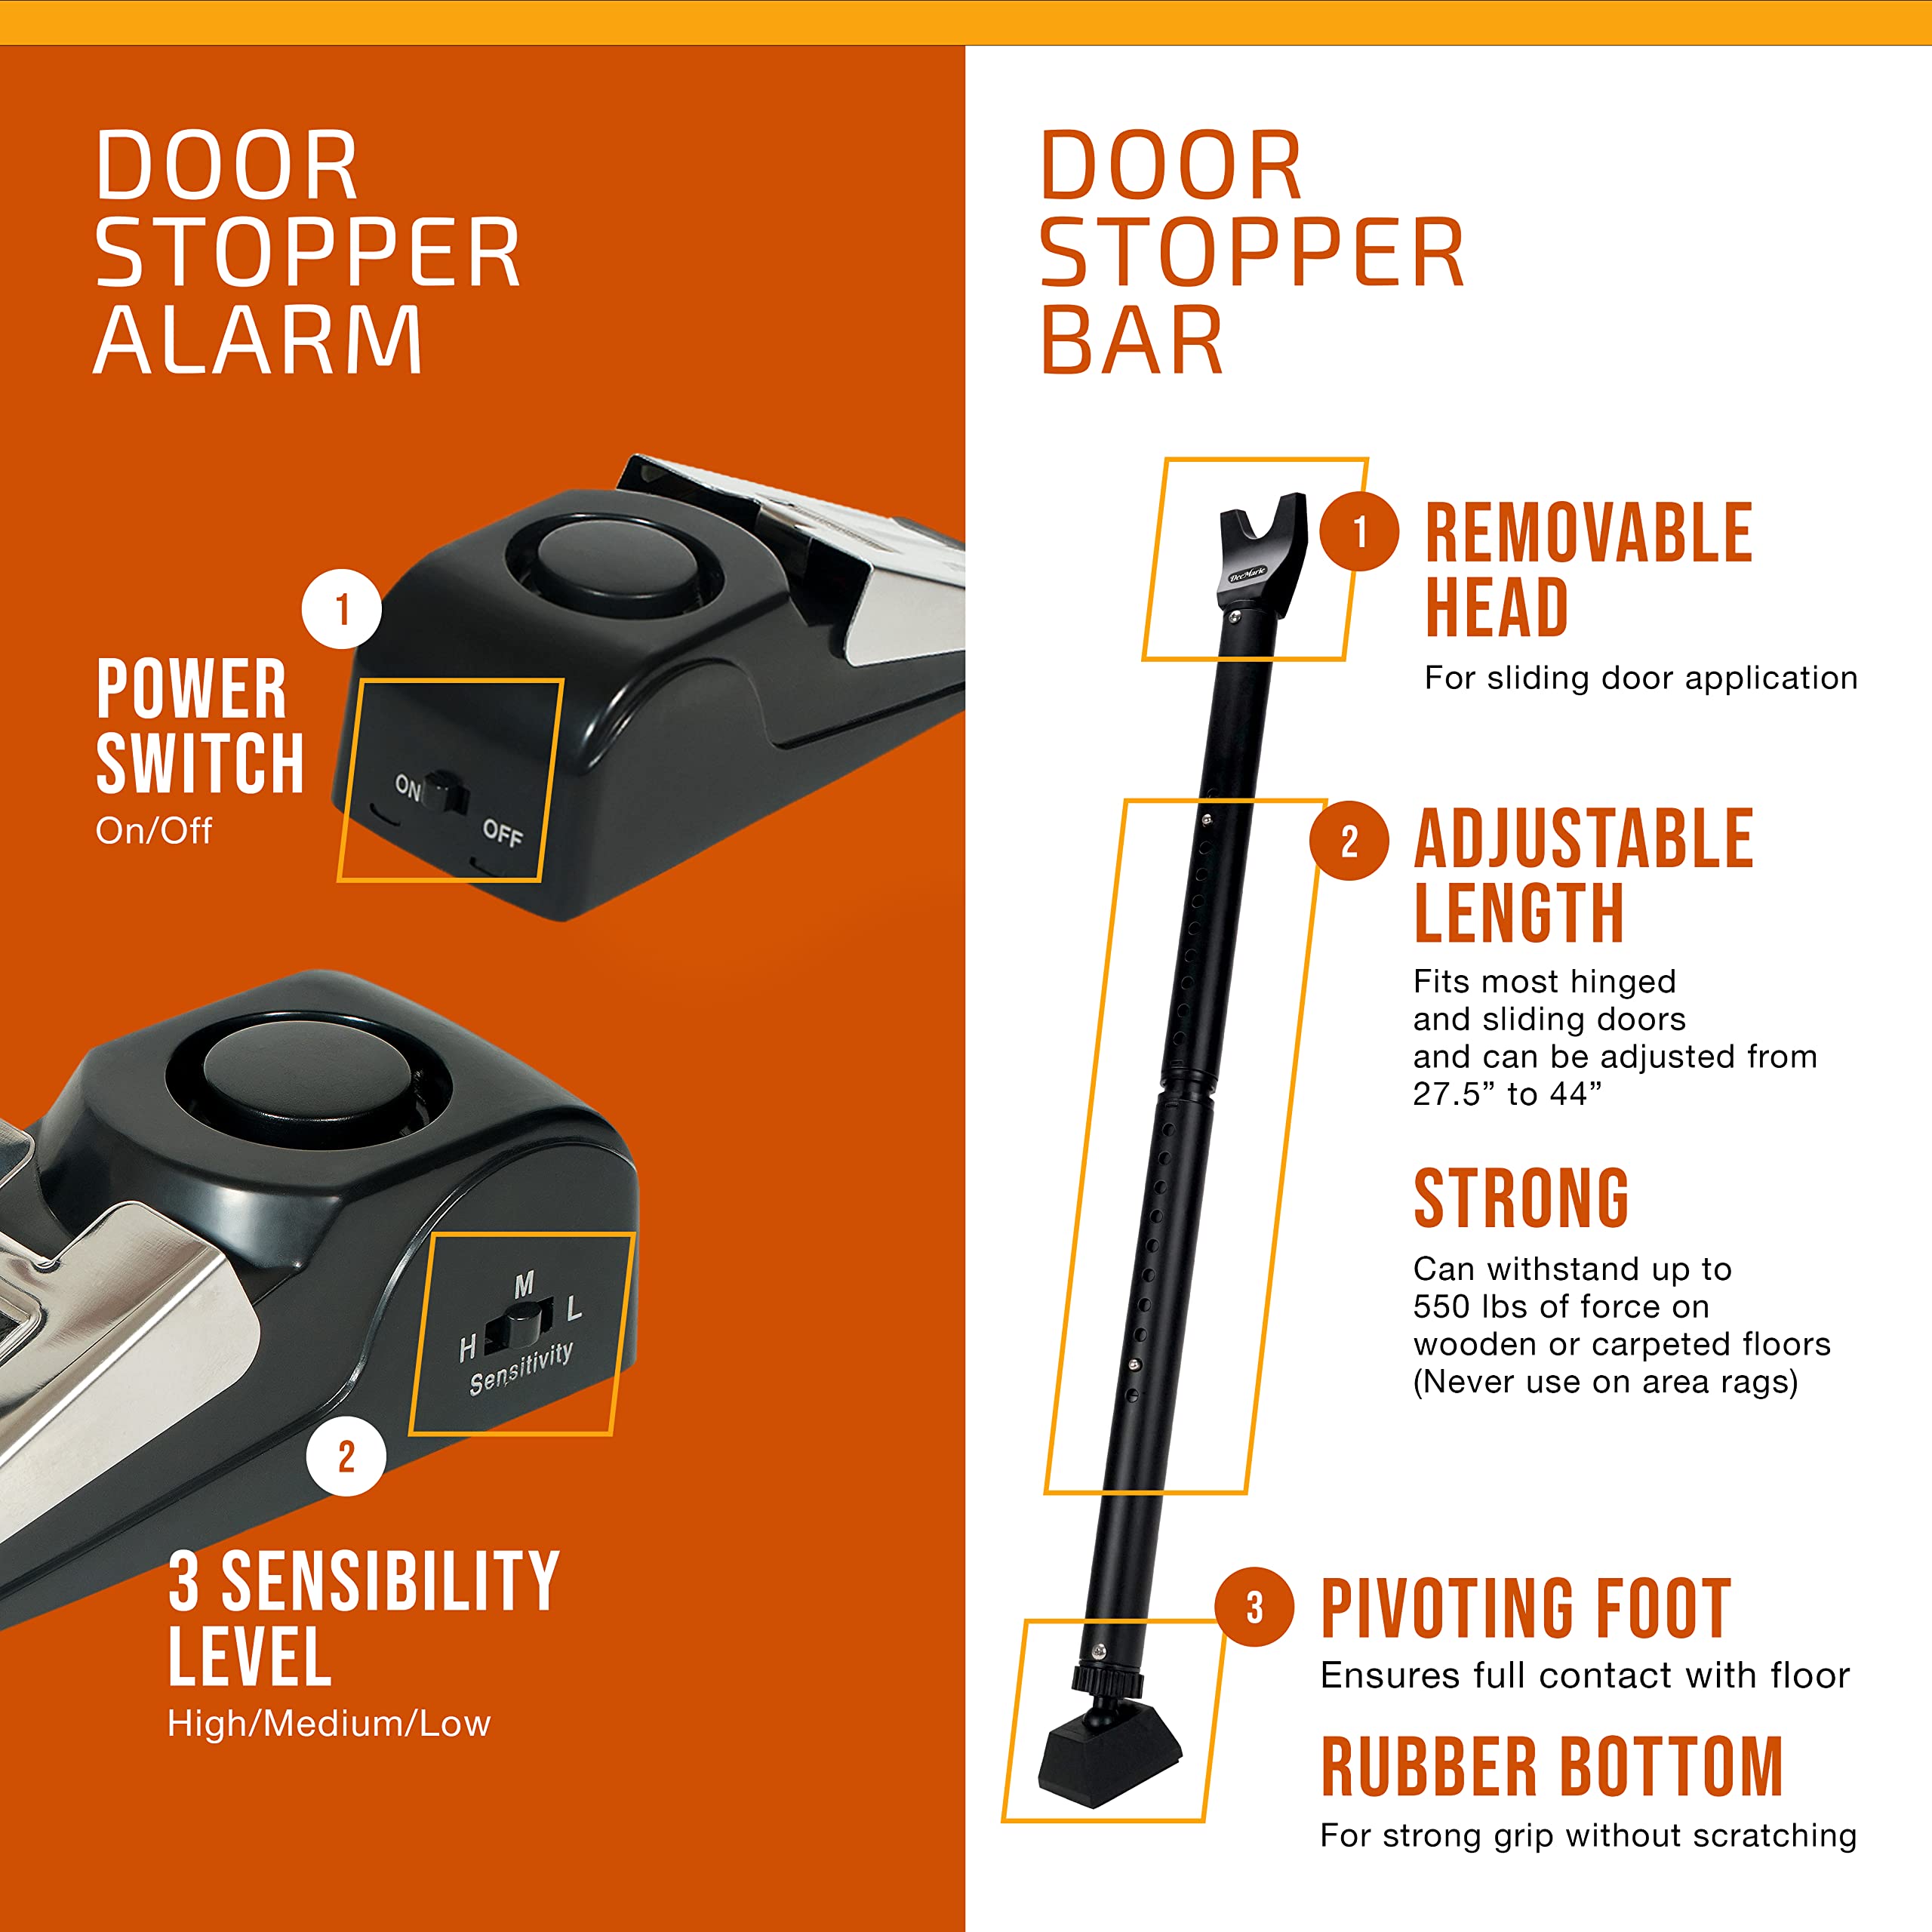 Door Stopper Alarm and Door Security Bar Bundle - House, Apartment, School, Hotel Door Security System, Adjustable Door Stoppers, Sliding Glass Door Security Bar - Lightweight, Portable Doorstops